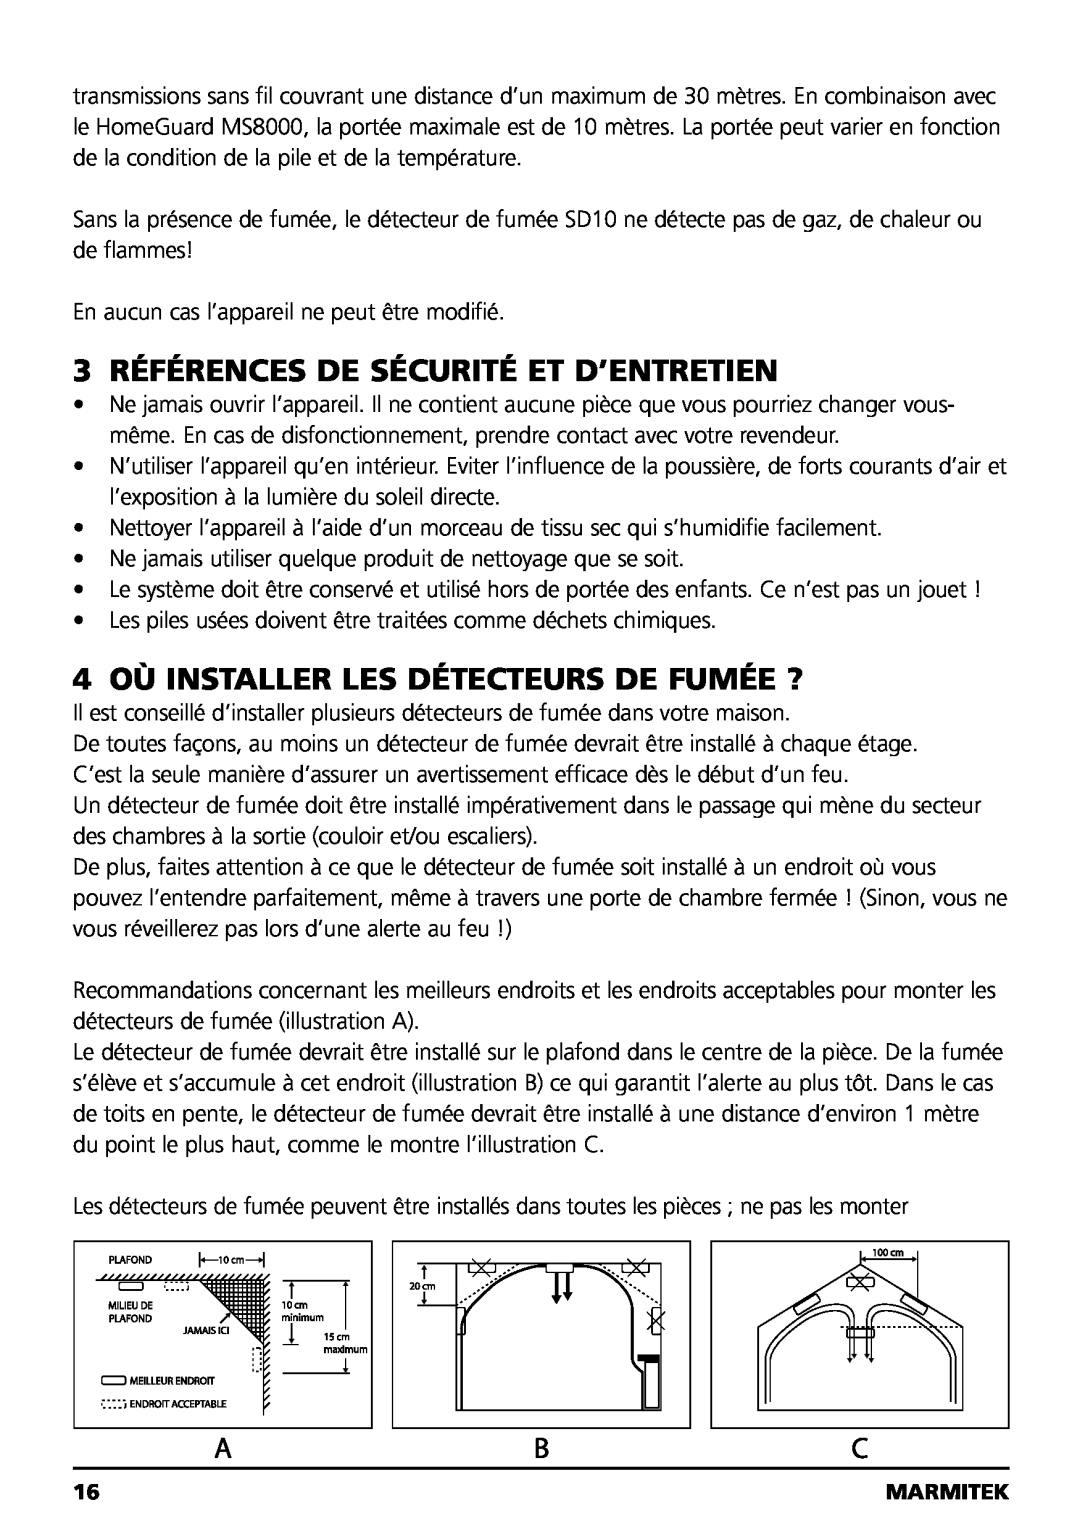 Marmitek SD10 owner manual 3 RÉFÉRENCES DE SÉCURITÉ ET D’ENTRETIEN, 4 OÙ INSTALLER LES DÉTECTEURS DE FUMÉE ? 